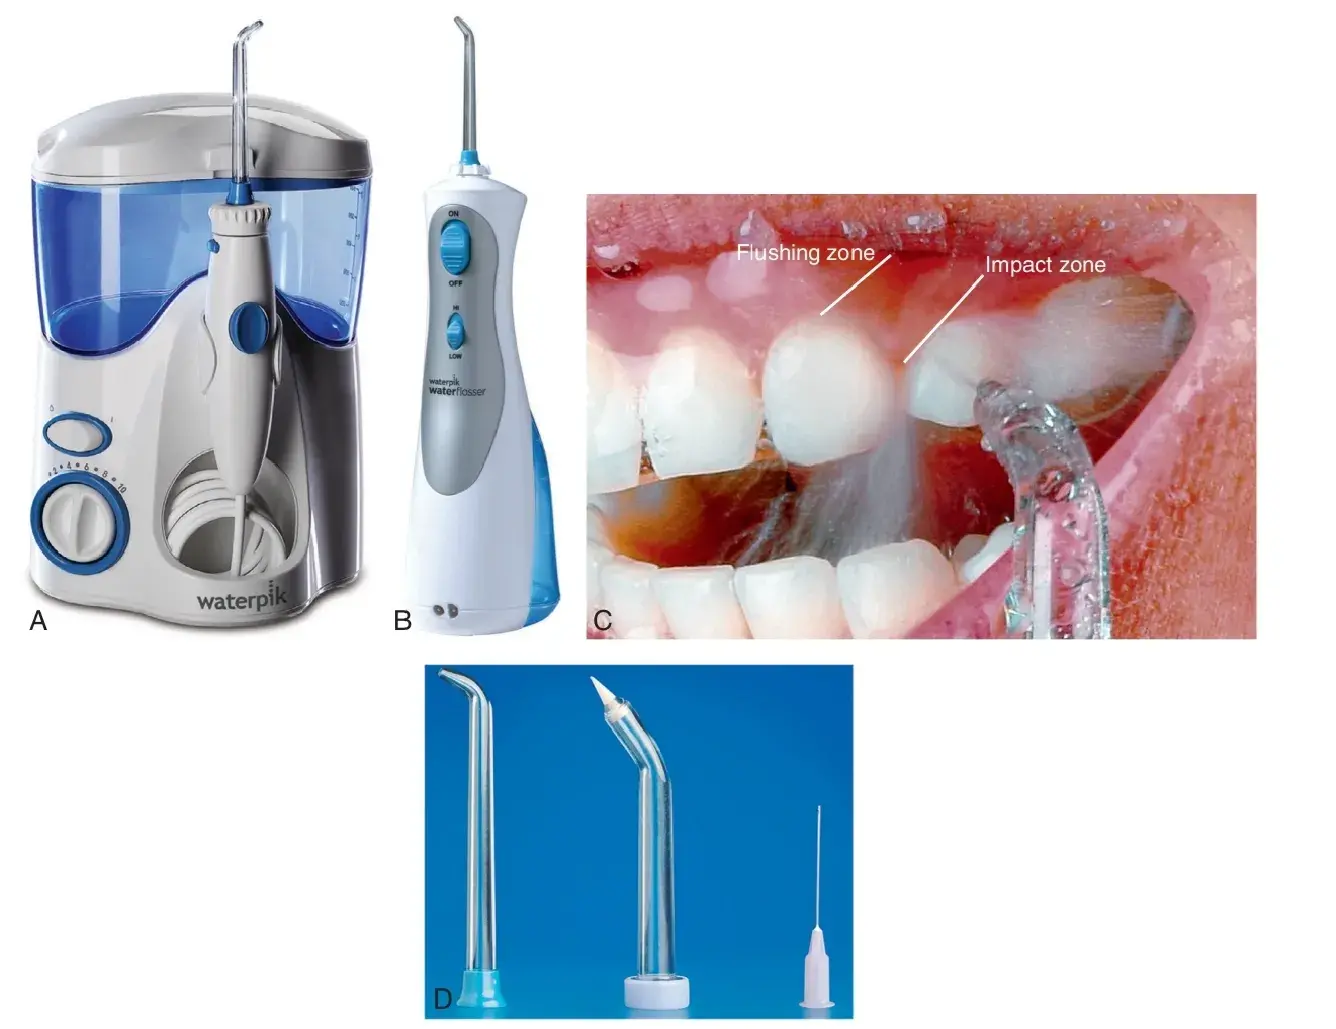 Oral hygiene devices: water flosser, irrigator